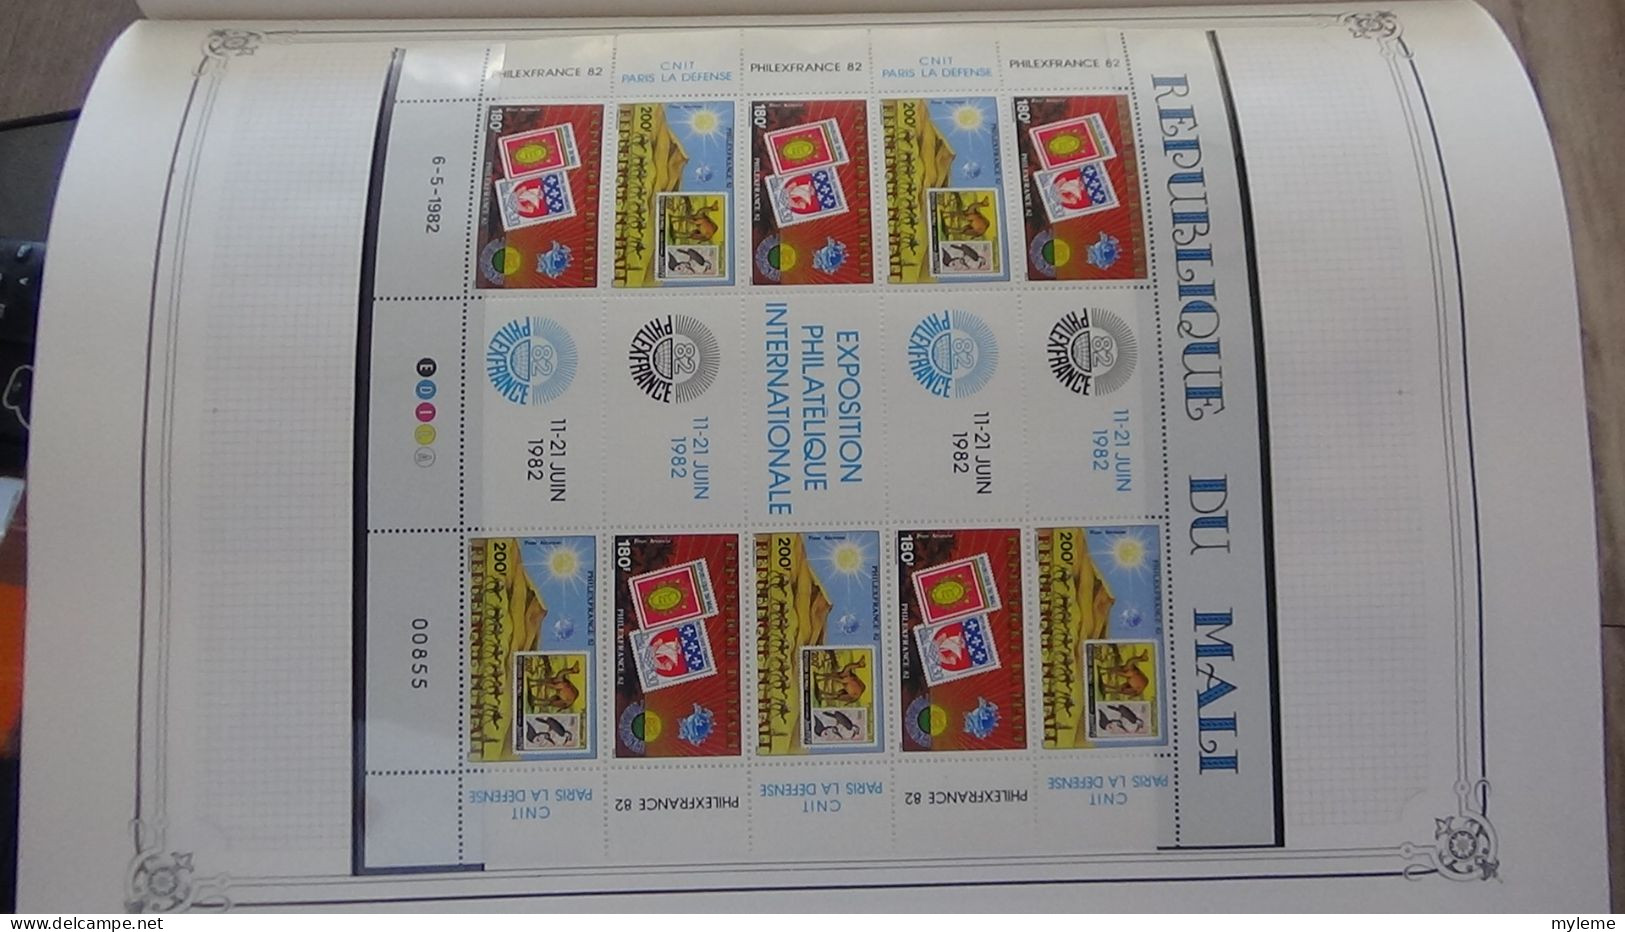 BC100 Collection de timbres et blocs ** du Mali sur feuille d'album.  A saisir !!!